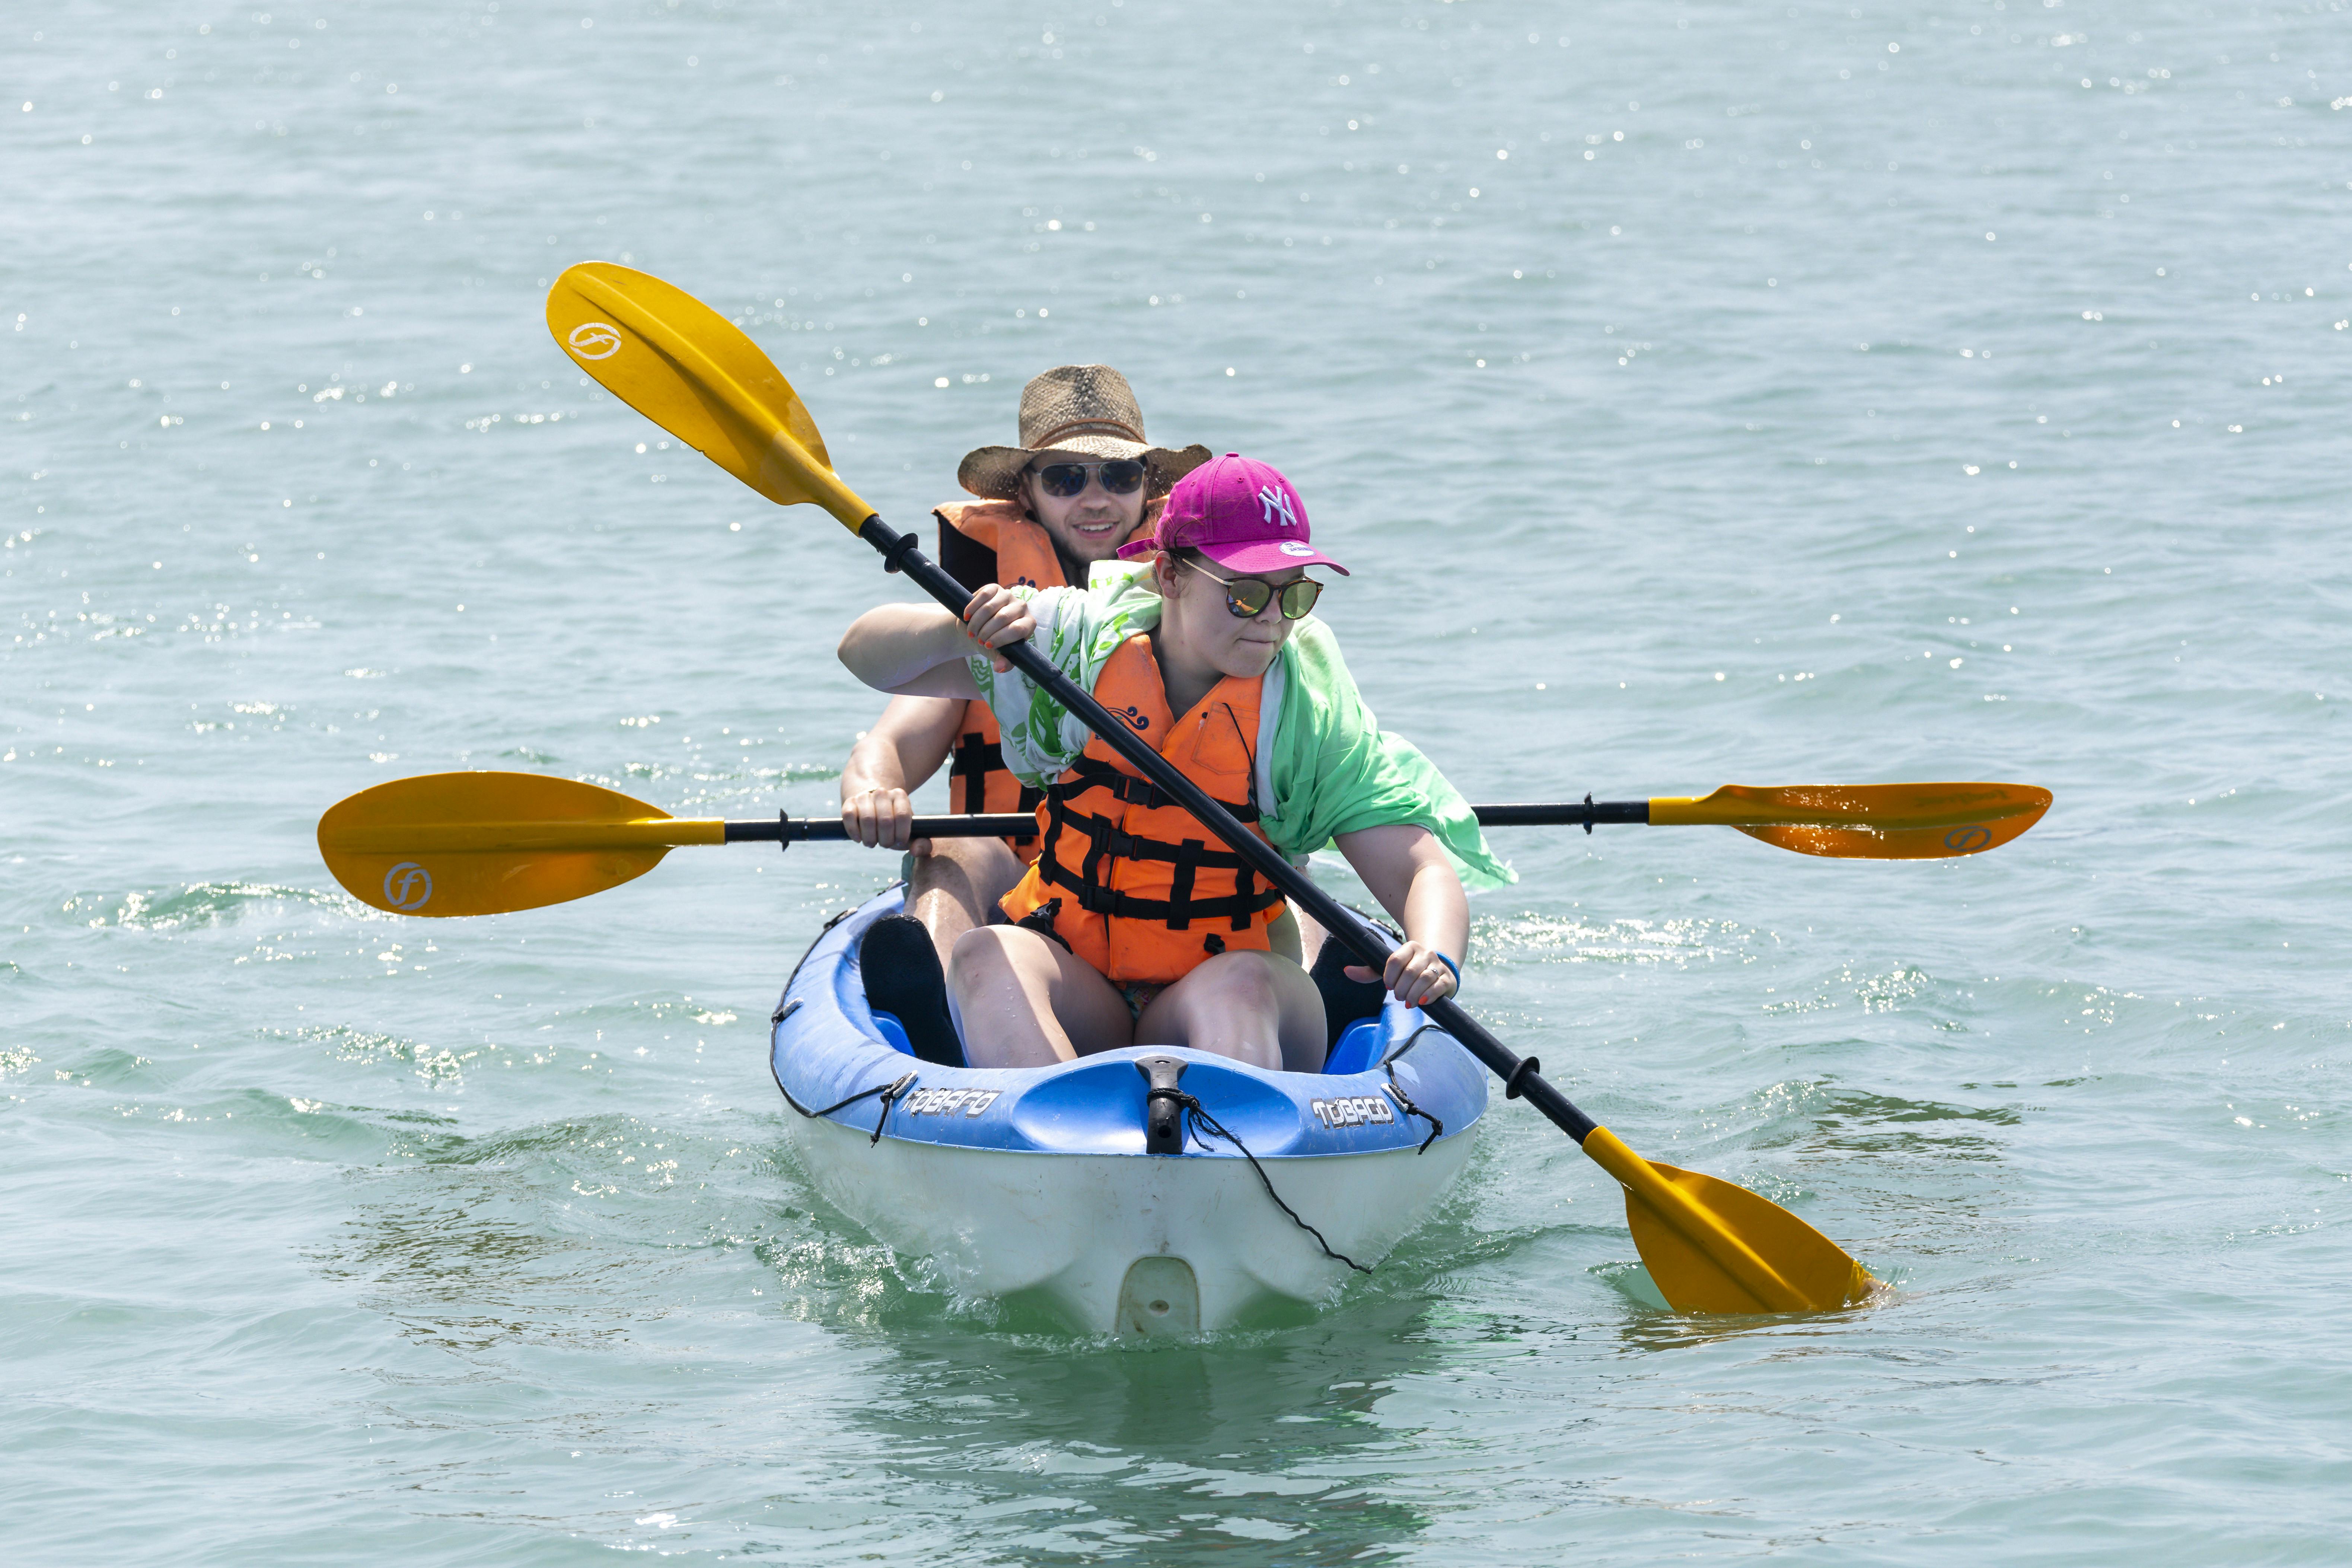 Sea kayaking Kefalonia